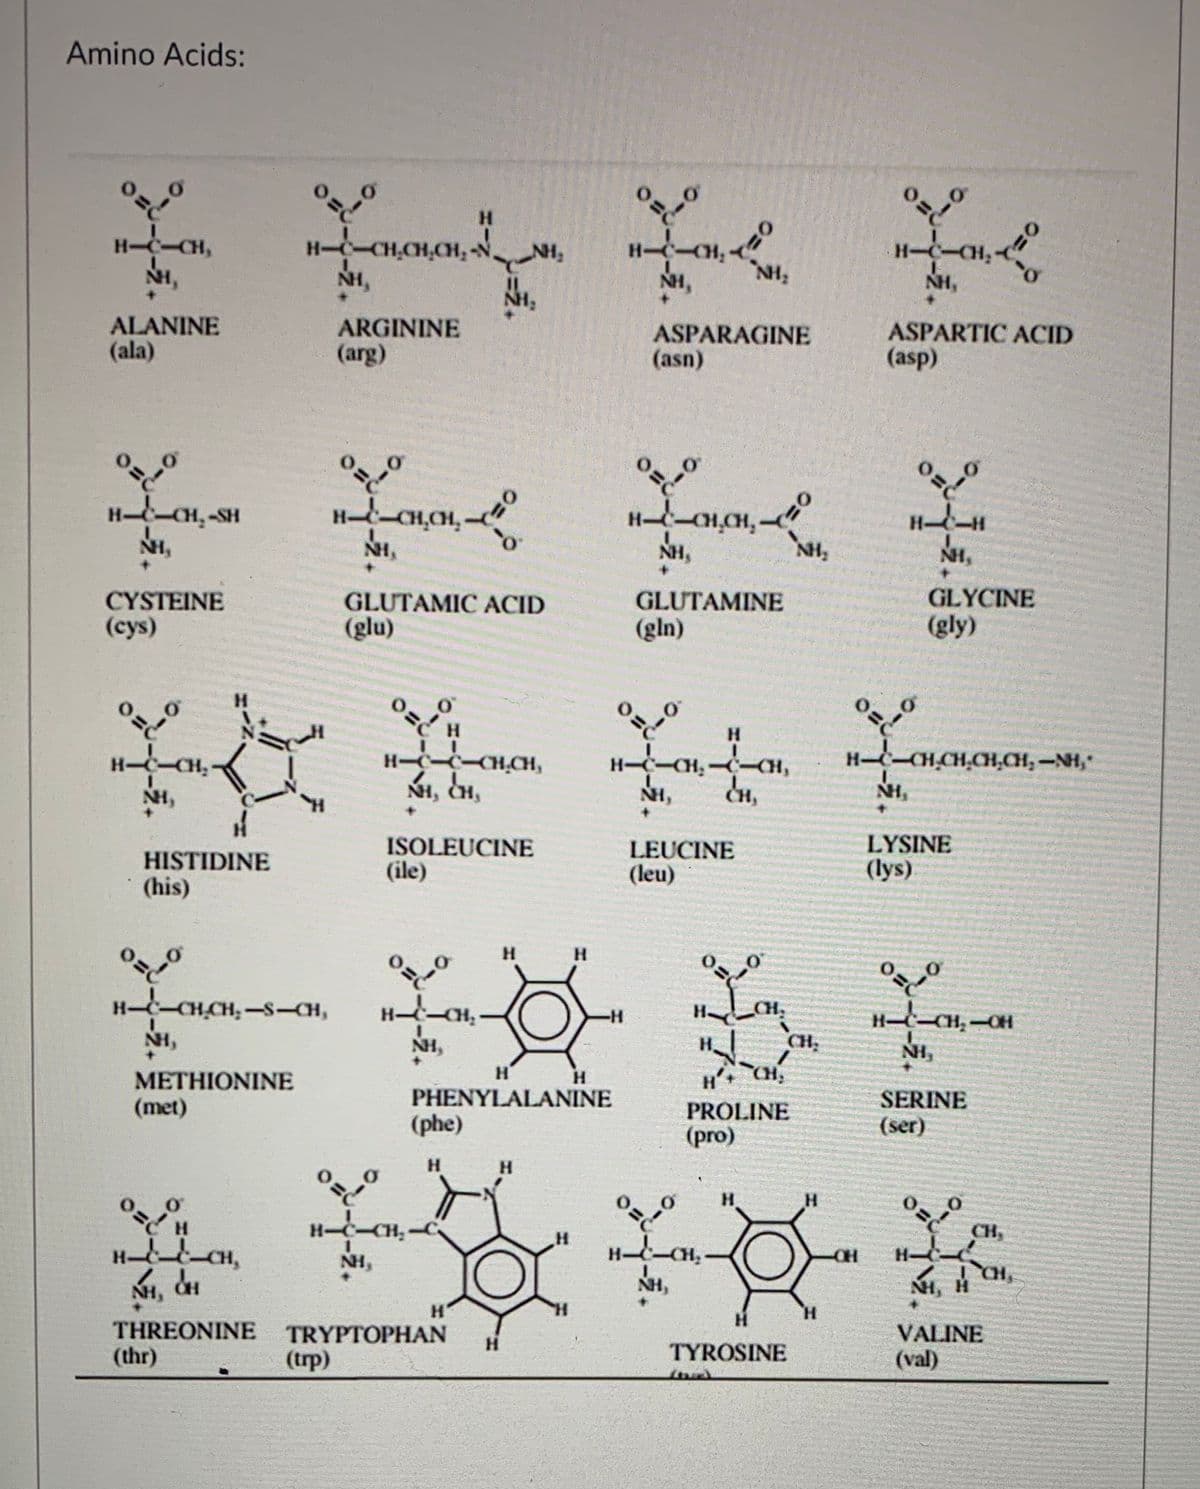 Amino Acids:
H.
H--CH,CH,CH, -N
NH,
H-C-CH,
NH,
H-C-
NH,
NH,
NH,
NH,
IN.
ALANINE
(ala)
ARGININE
(arg)
ASPARTIC ACID
ASPARAGINE
(asn)
(asp)
H-CH,-SH
HCH,CH-
H-H
NH,
NH,
NH,
GLYCINE
CYSTEINE
(cys)
GLUTAMIC ACID
GLUTAMINE
(glu)
(gln)
(gly)
H.
H-CCCH.CH,
NI, CH,
H-C-CH,-CH,
H-C-CHCH,CH,CH, -NH,"
NH,
NH,
NH,
HISTIDINE
(his)
ISOLEUCINE
(ile)
LEUCINE
(leu)
LYSINE
(lys)
H.
H.
H-CHCH, -S-CH,
-H-
H
CH,
H-
NH,
NH,
H.
CH
NH,
H'
H'
CH,
METHIONINE
(met)
PHENYLALANINE
SERINE
PROLINE
(phe)
(ser)
(pro)
H.
H.
H-C-CH-C
CH,
H-
NH,
CH
H-
NH, CH
NH,
NI, H
H'
H.
THREONINE
TRYPTOPHAN
VALINE
H.
(thr)
(trp)
TYROSINE
(val)
